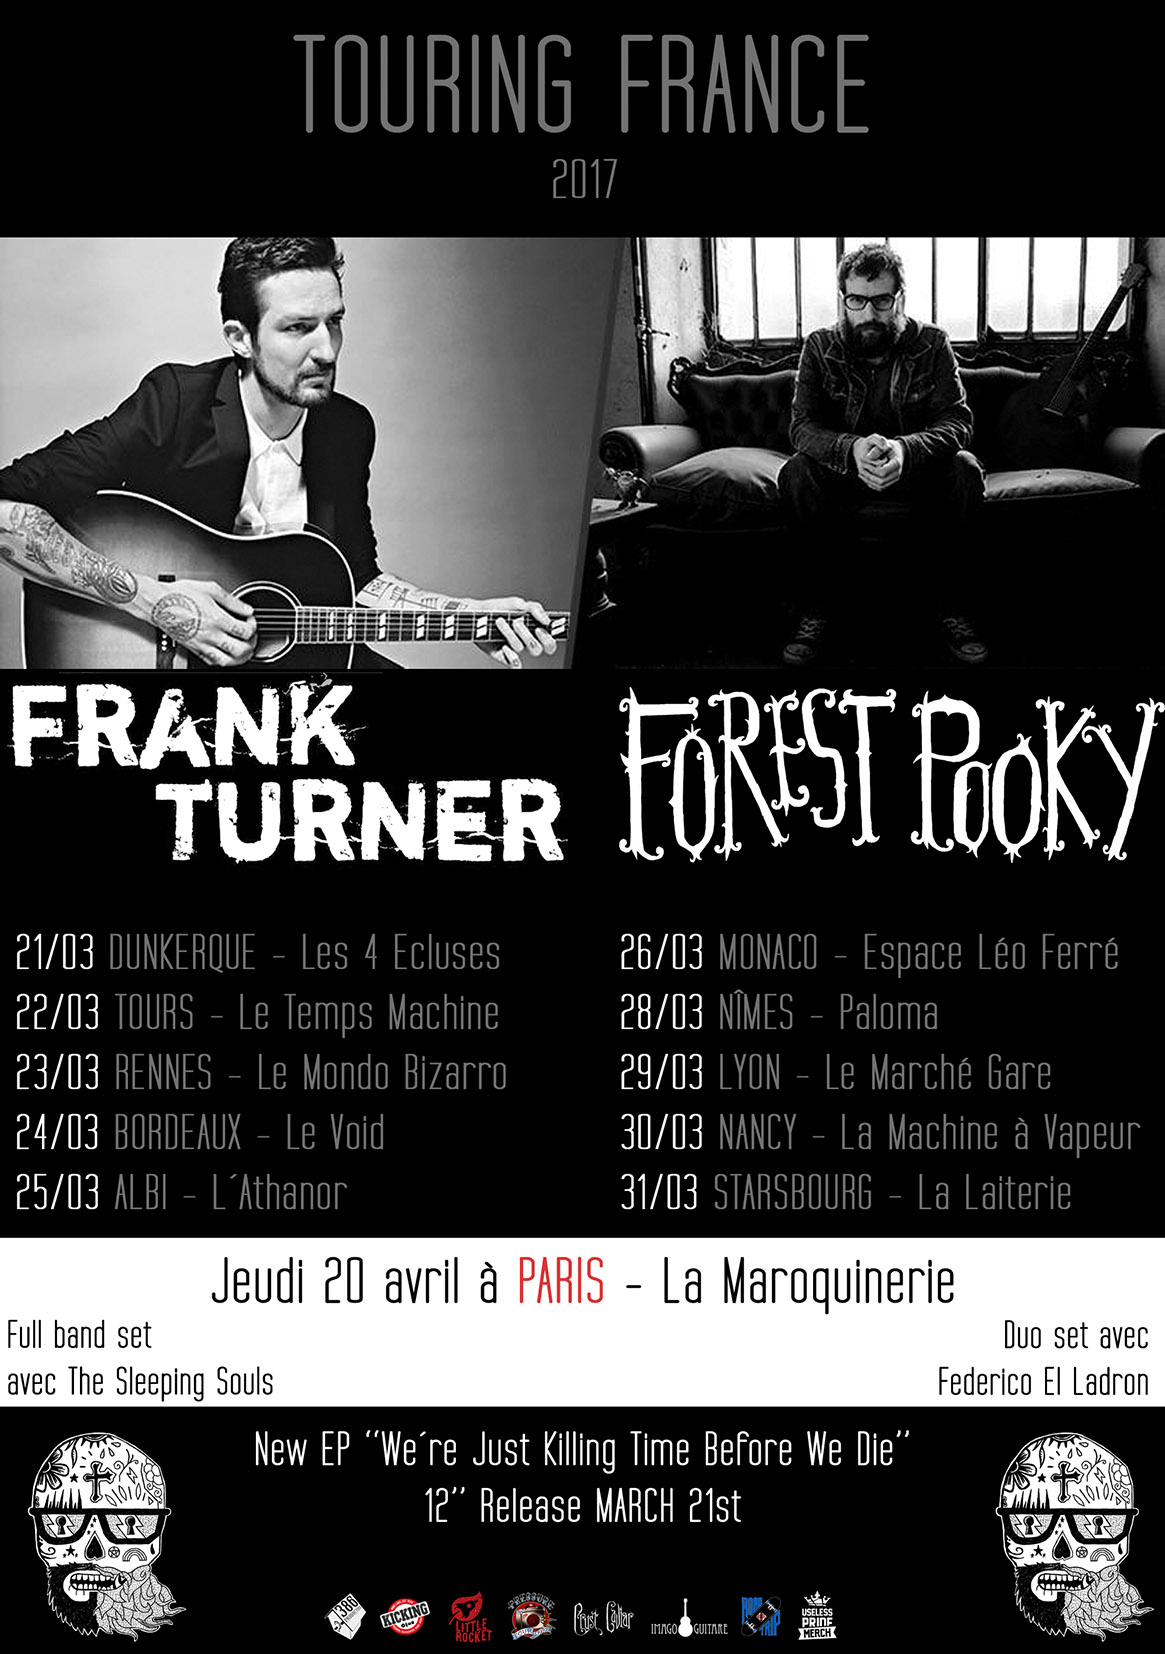 Frank Turner, Forest pooky, pop, folk, nouvel album, clip, tournée